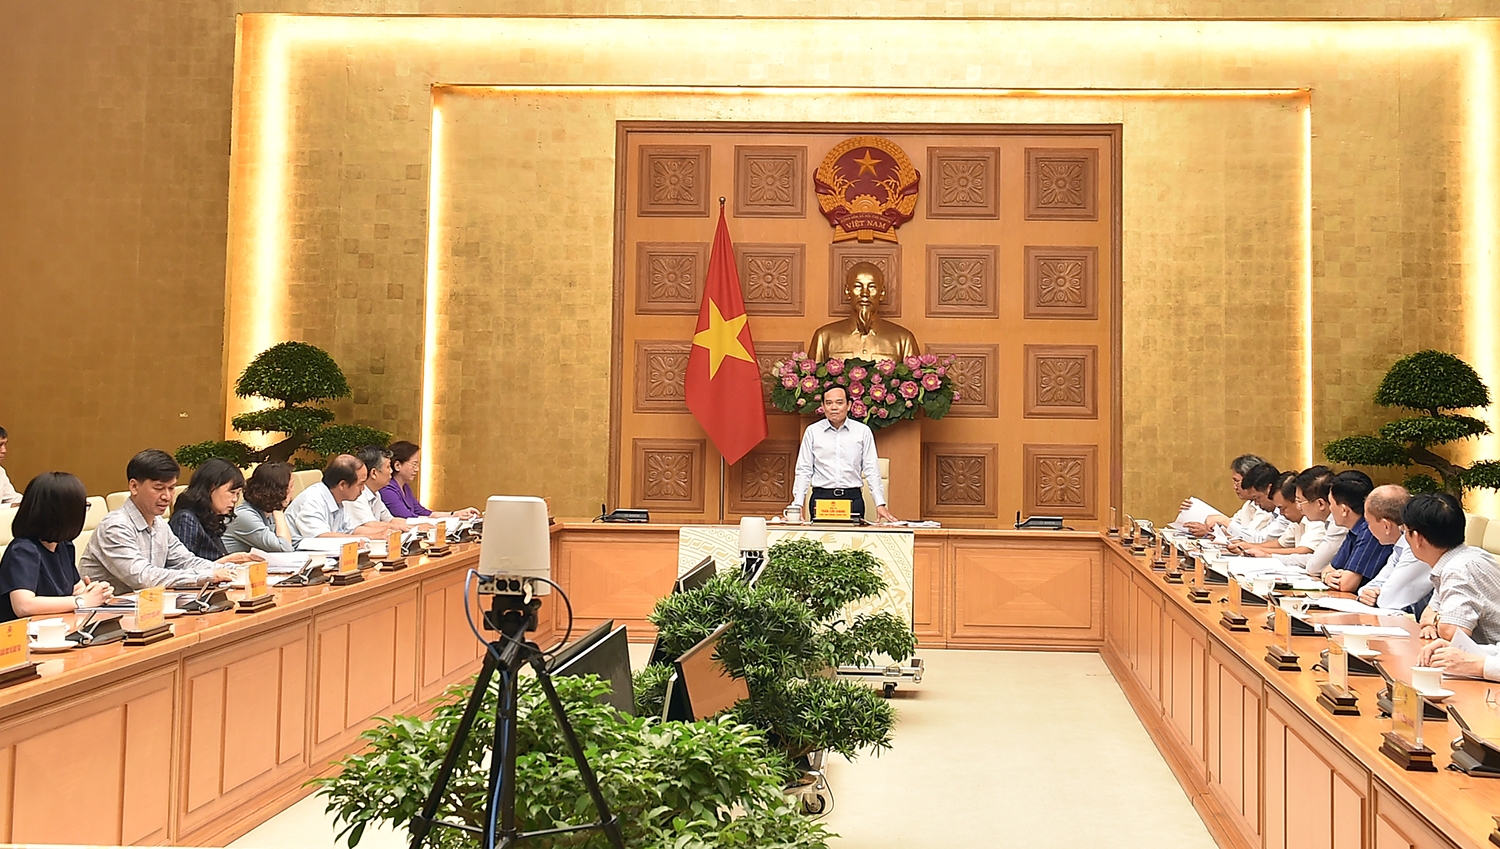 Phó Thủ tướng khẳng định sẽ cùng đồng hành với các bộ, ngành trong quá trình làm việc vì nếu chậm ban hành sẽ kéo chậm sự phát triển, gây tâm tư cho cán bộ, công chức, viên chức ở cơ sở - Ảnh: VGP/Hải Minh